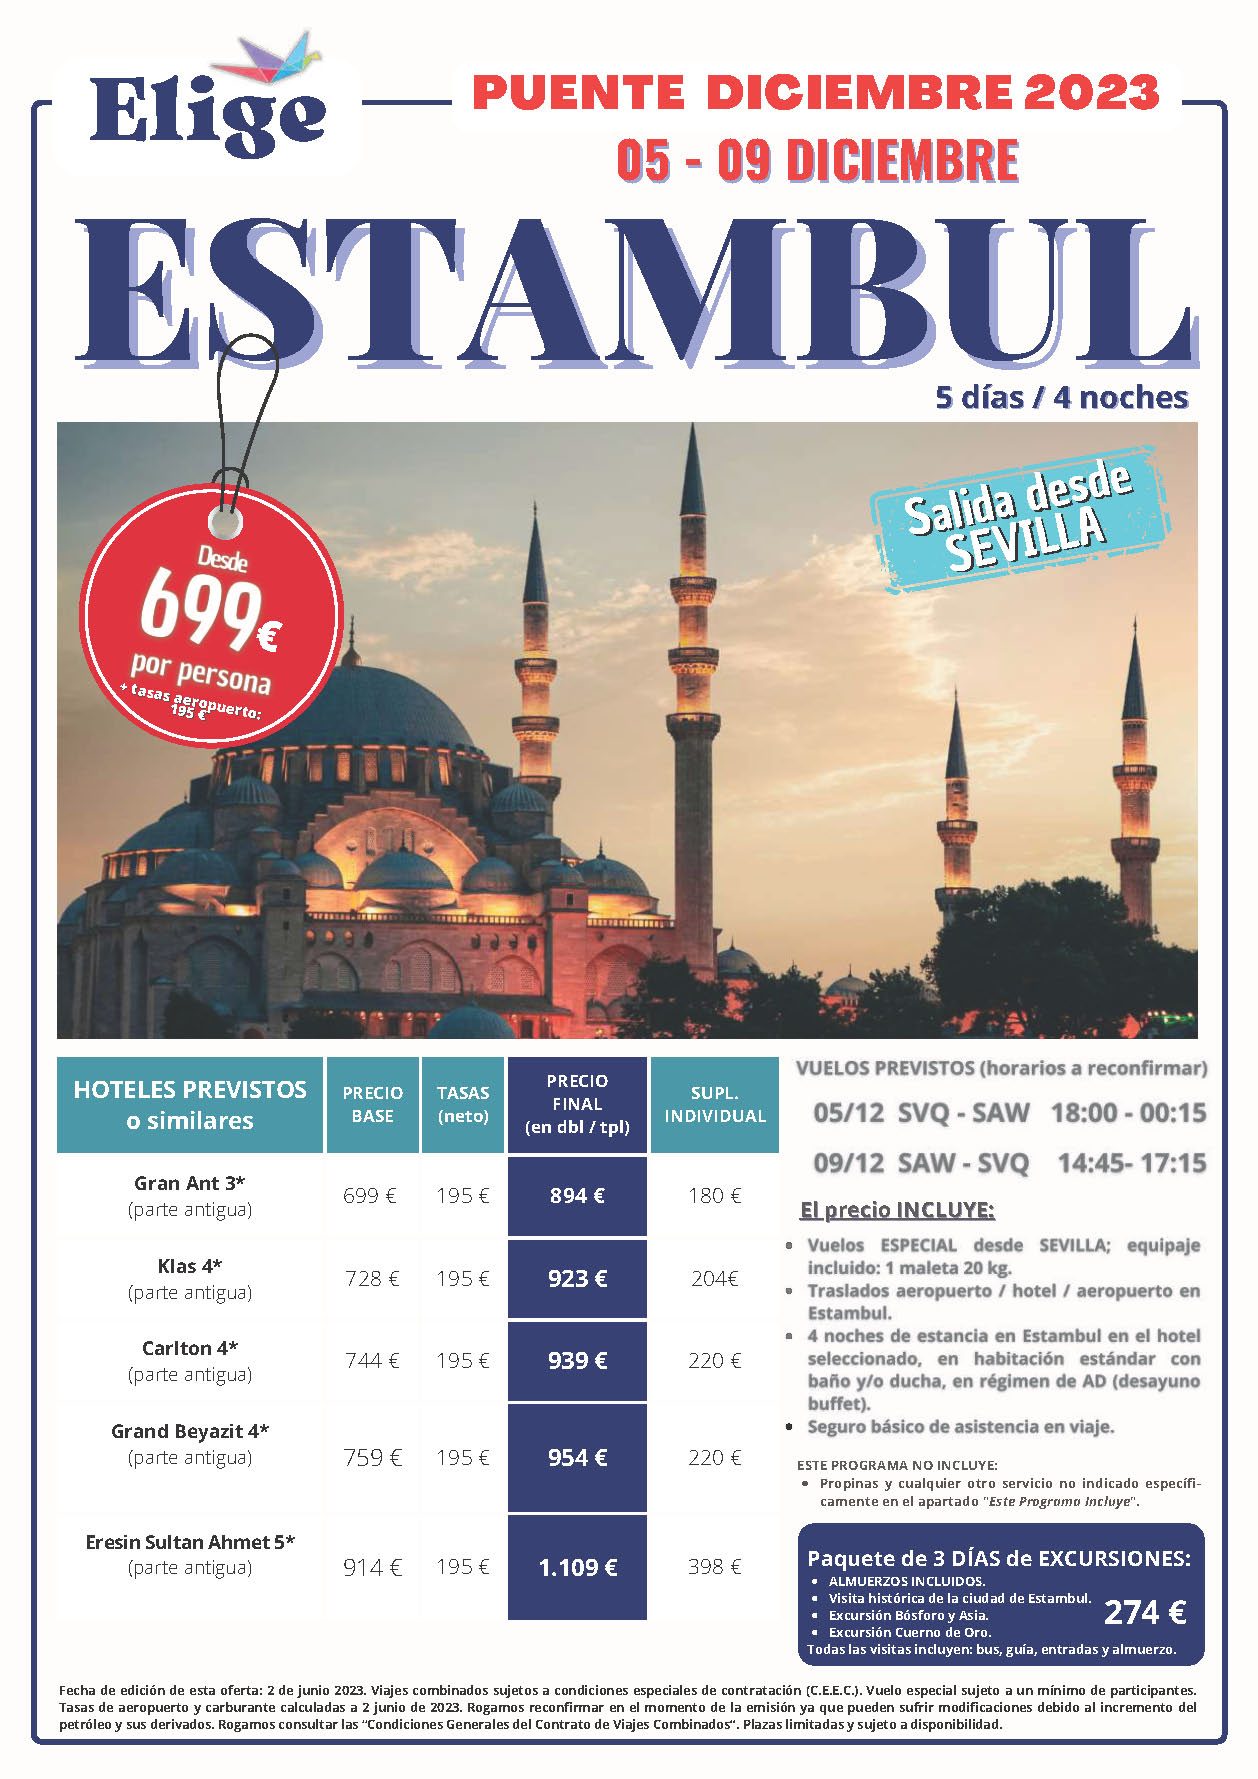 Oferta Elige tu Viaje Puente de Diciembre 2023 Turquia Estancia en Estambul 5 dias salida 5 diciembre en vuelo directo desde Sevilla